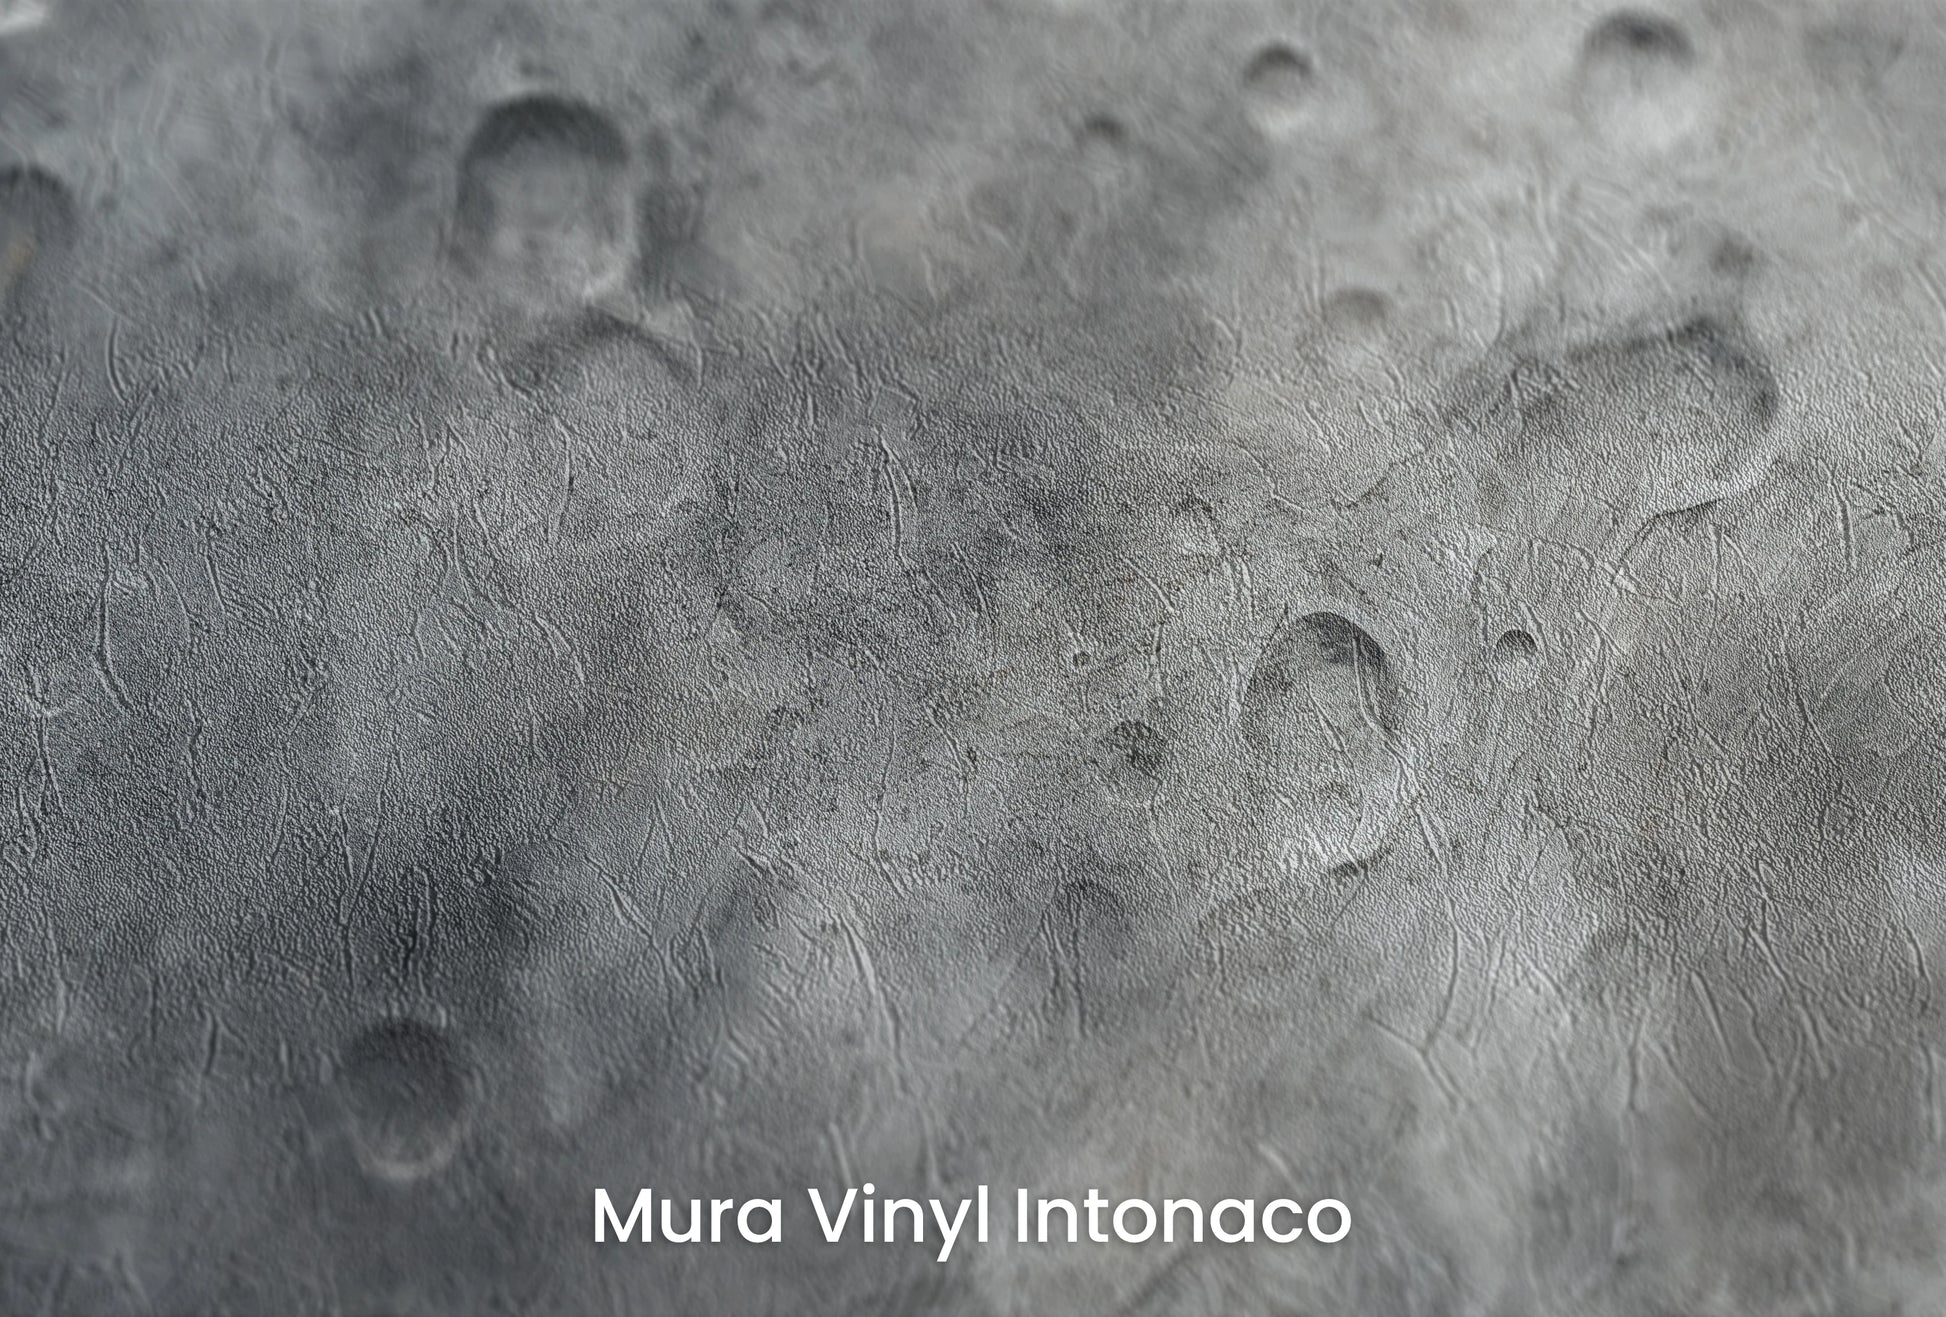 Zbliżenie na artystyczną fototapetę o nazwie Lunar Desert na podłożu Mura Vinyl Intonaco - struktura tartego tynku.